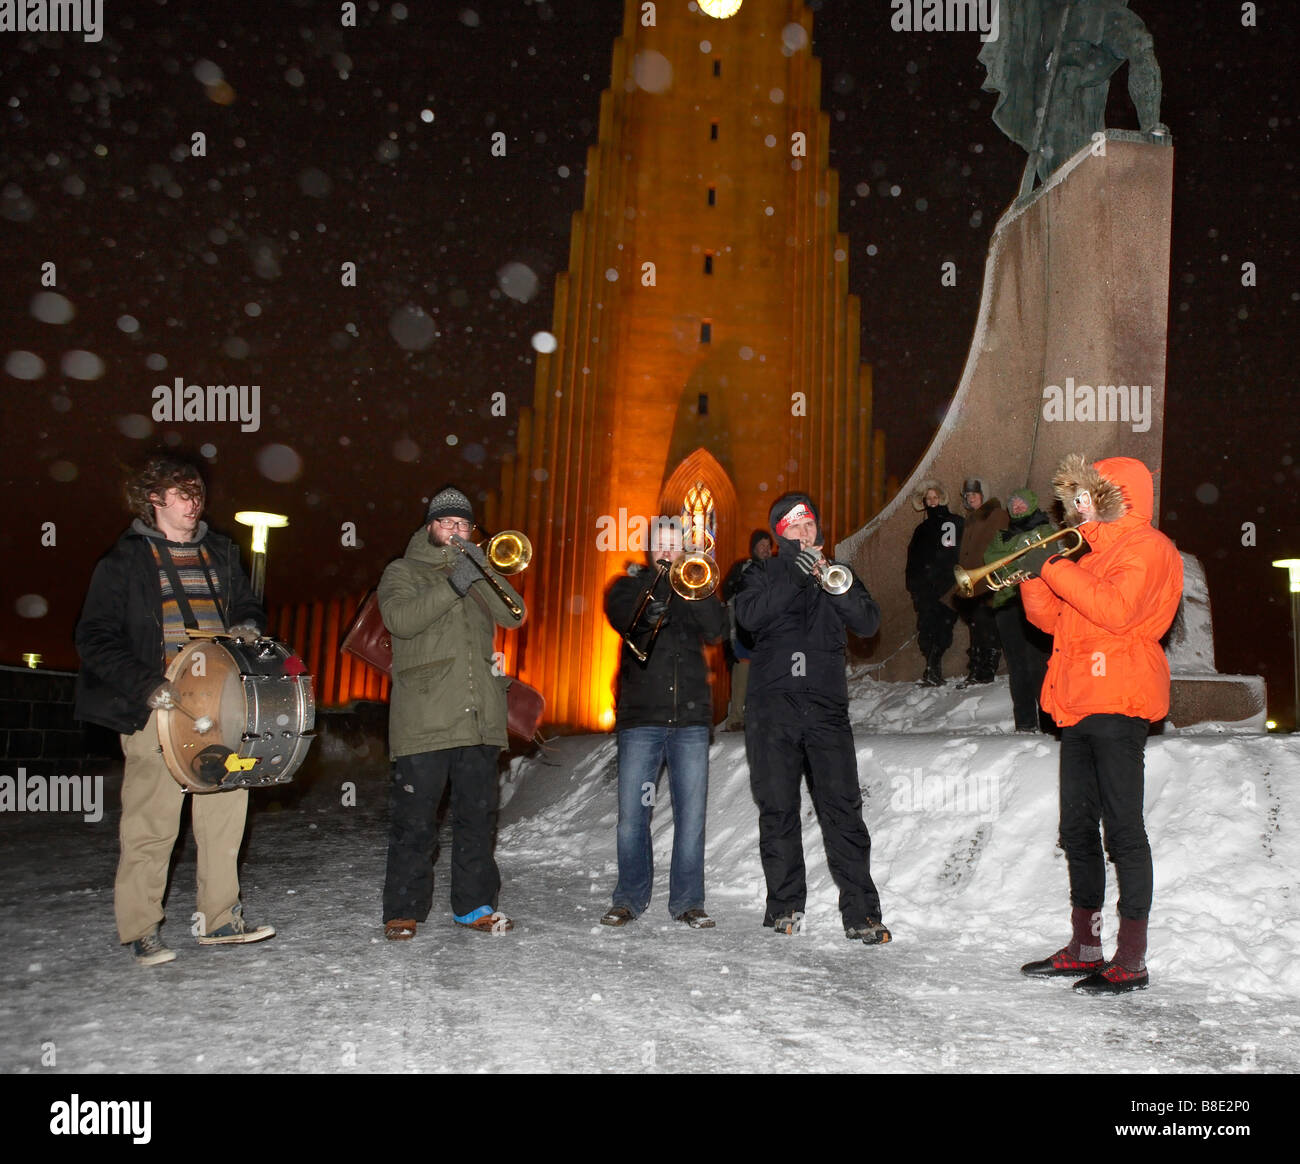 Groupe jouant alors qu'il neige en hiver, Festival, Reykjavik Islande Banque D'Images